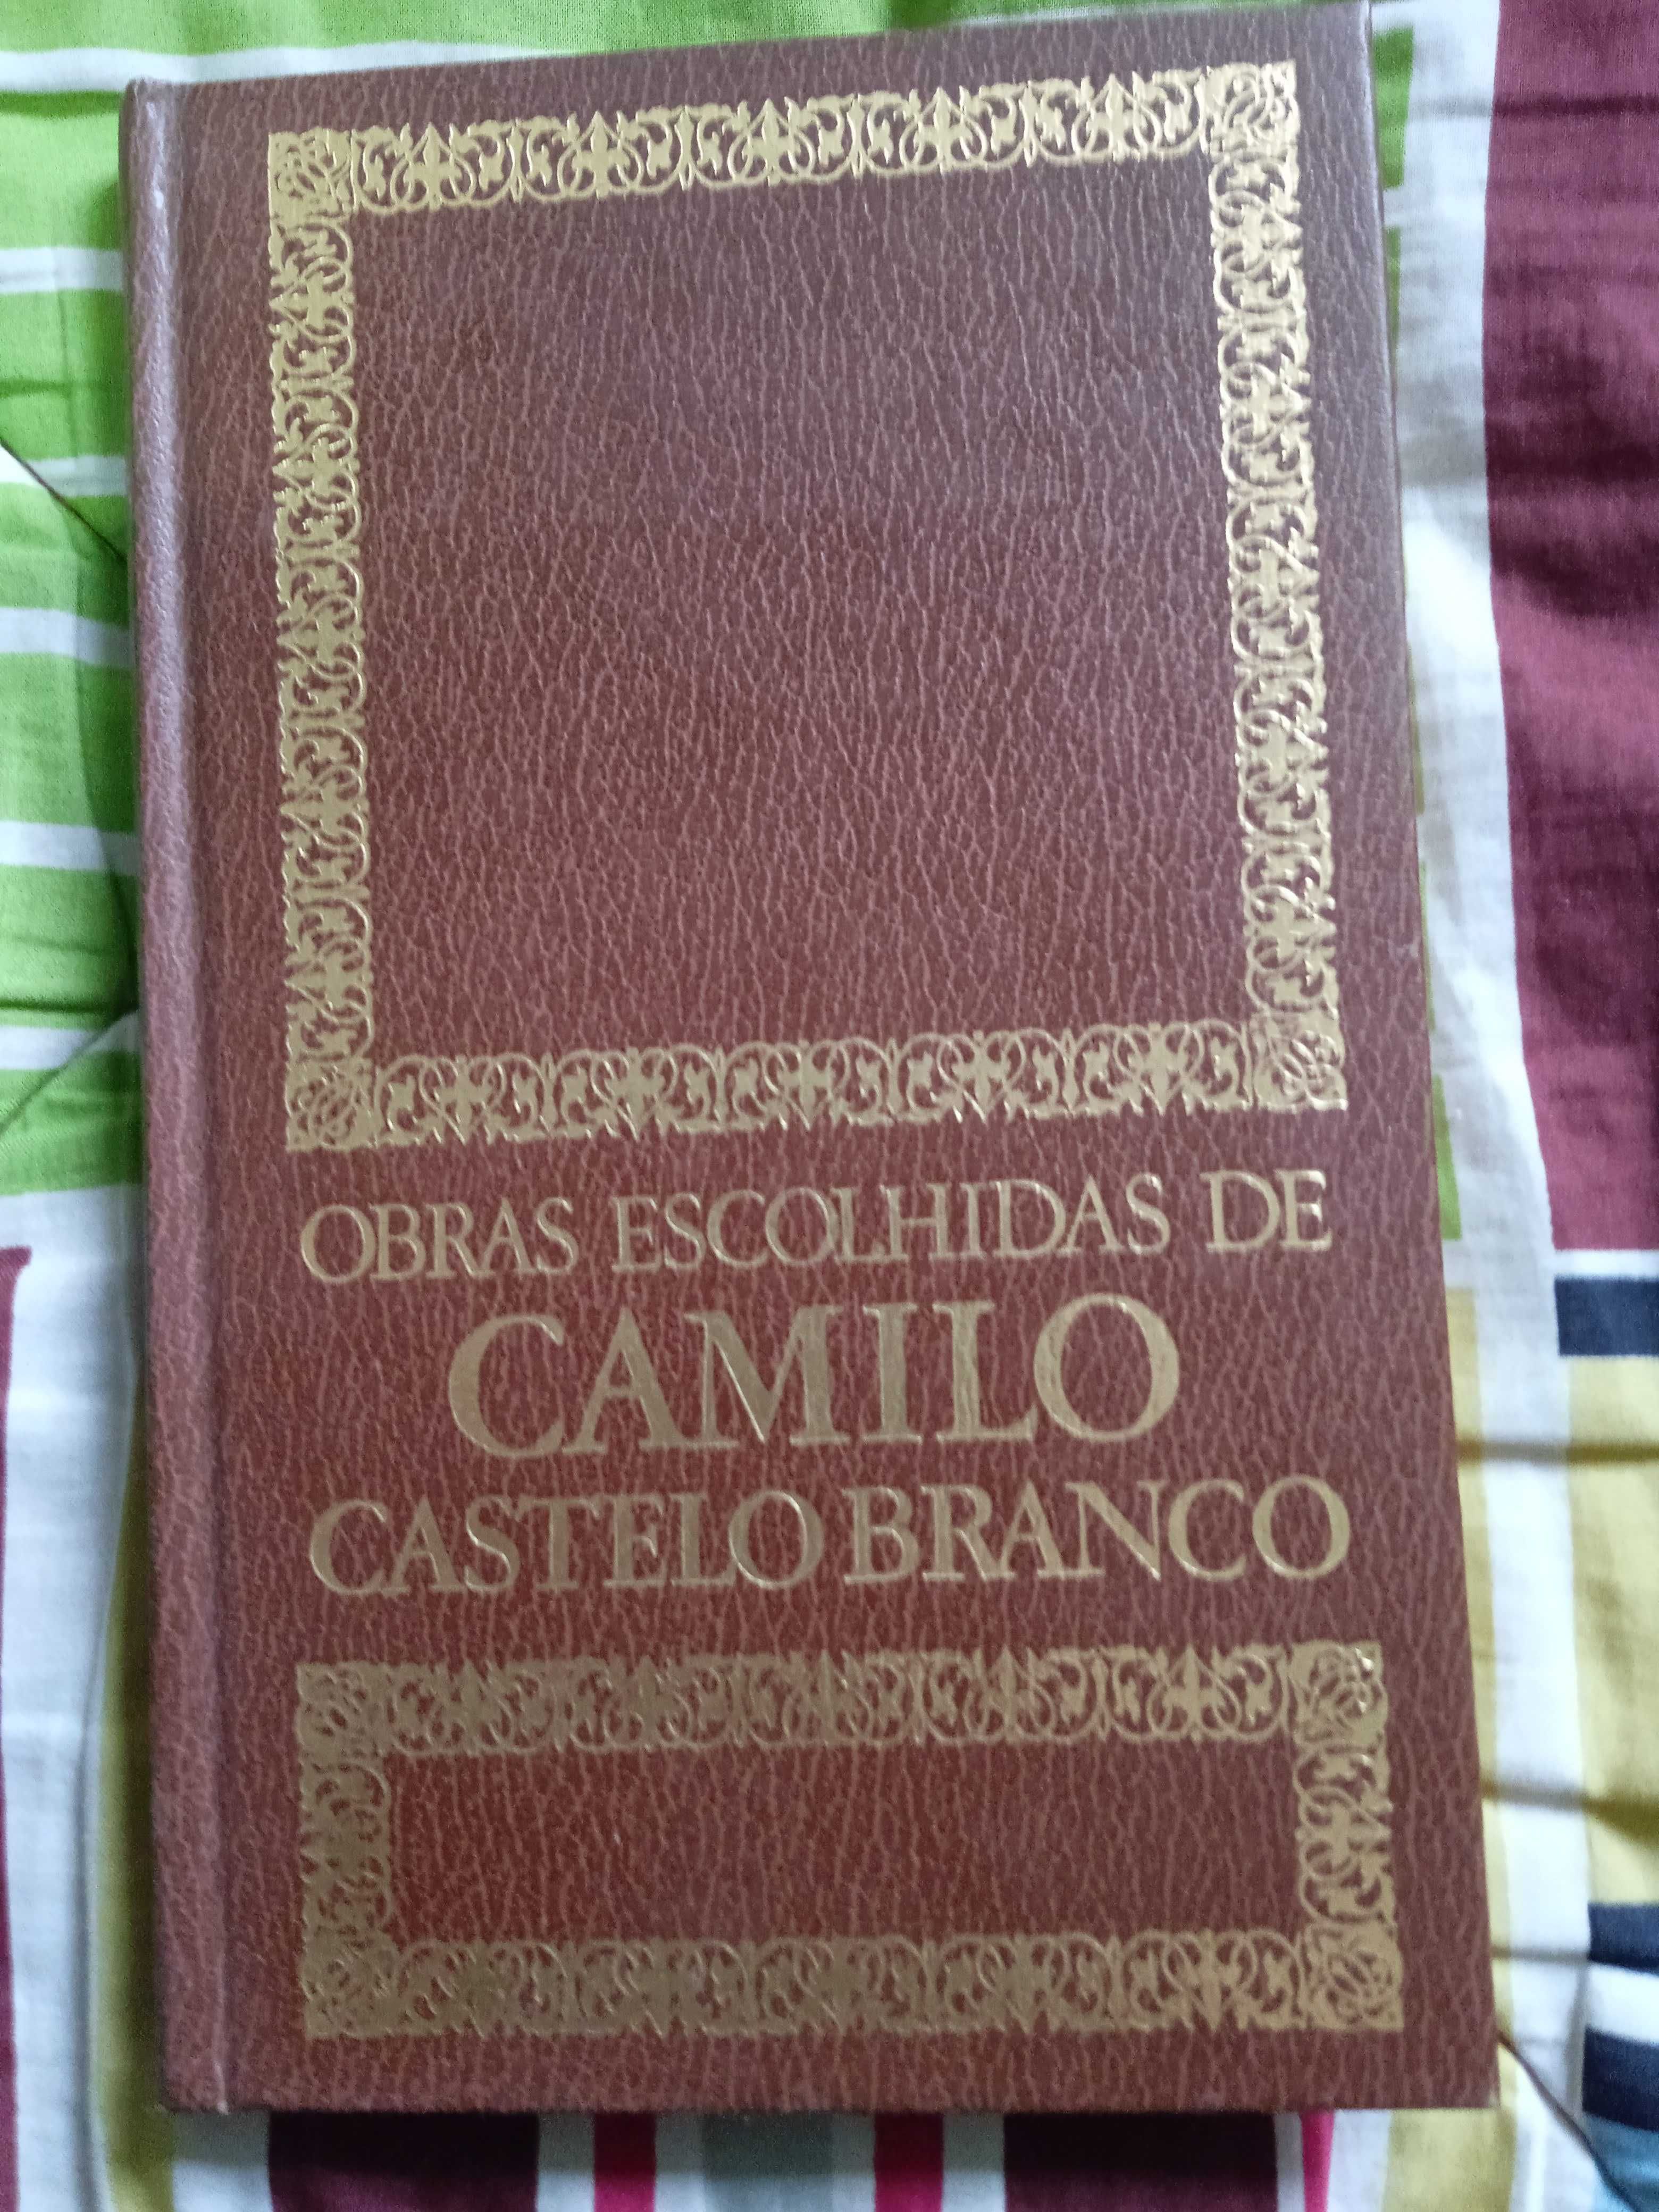 O Romance de um Homem Rico - Camilo Castelo Branco